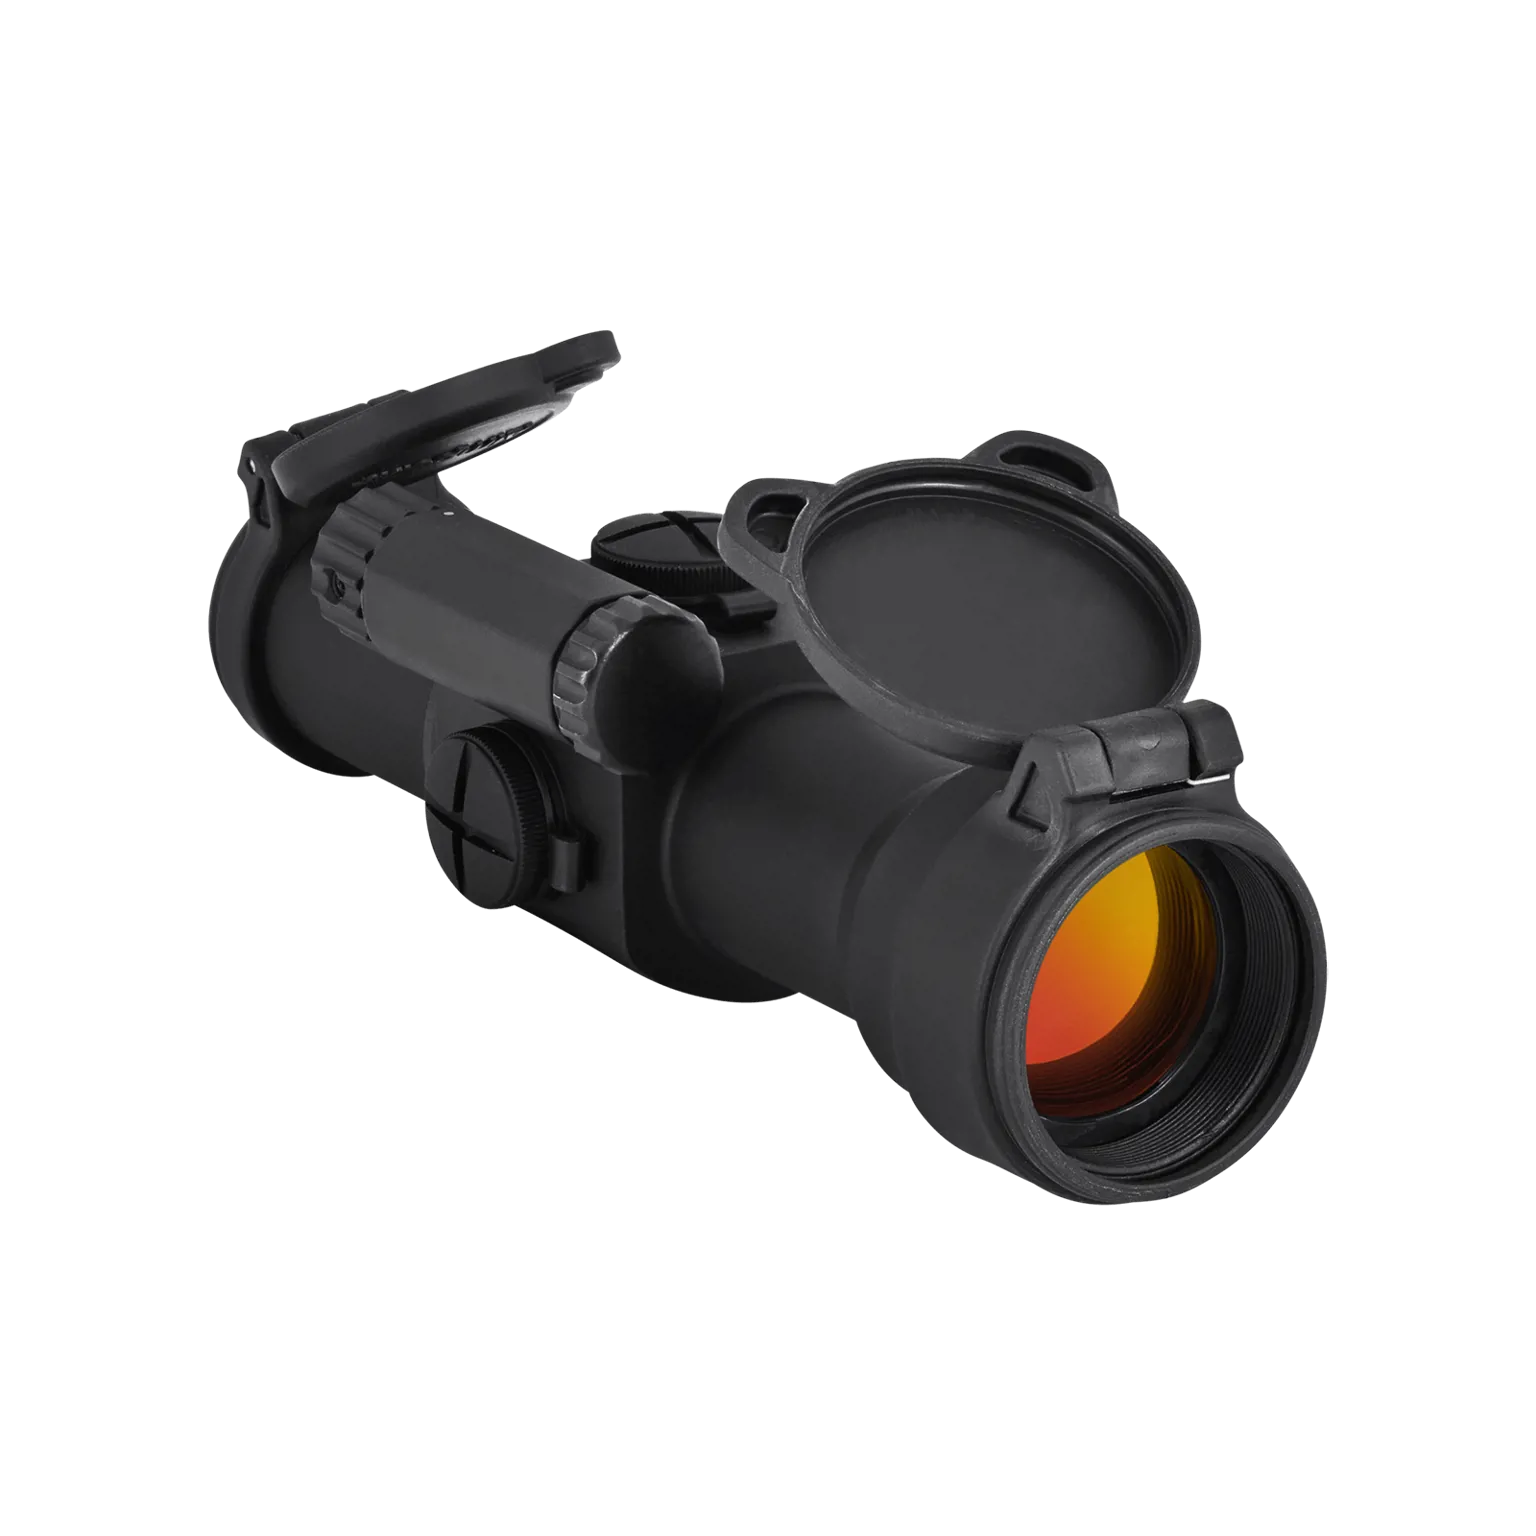 9000SC™ 4 MOA - Red dot reflex sight  - 3